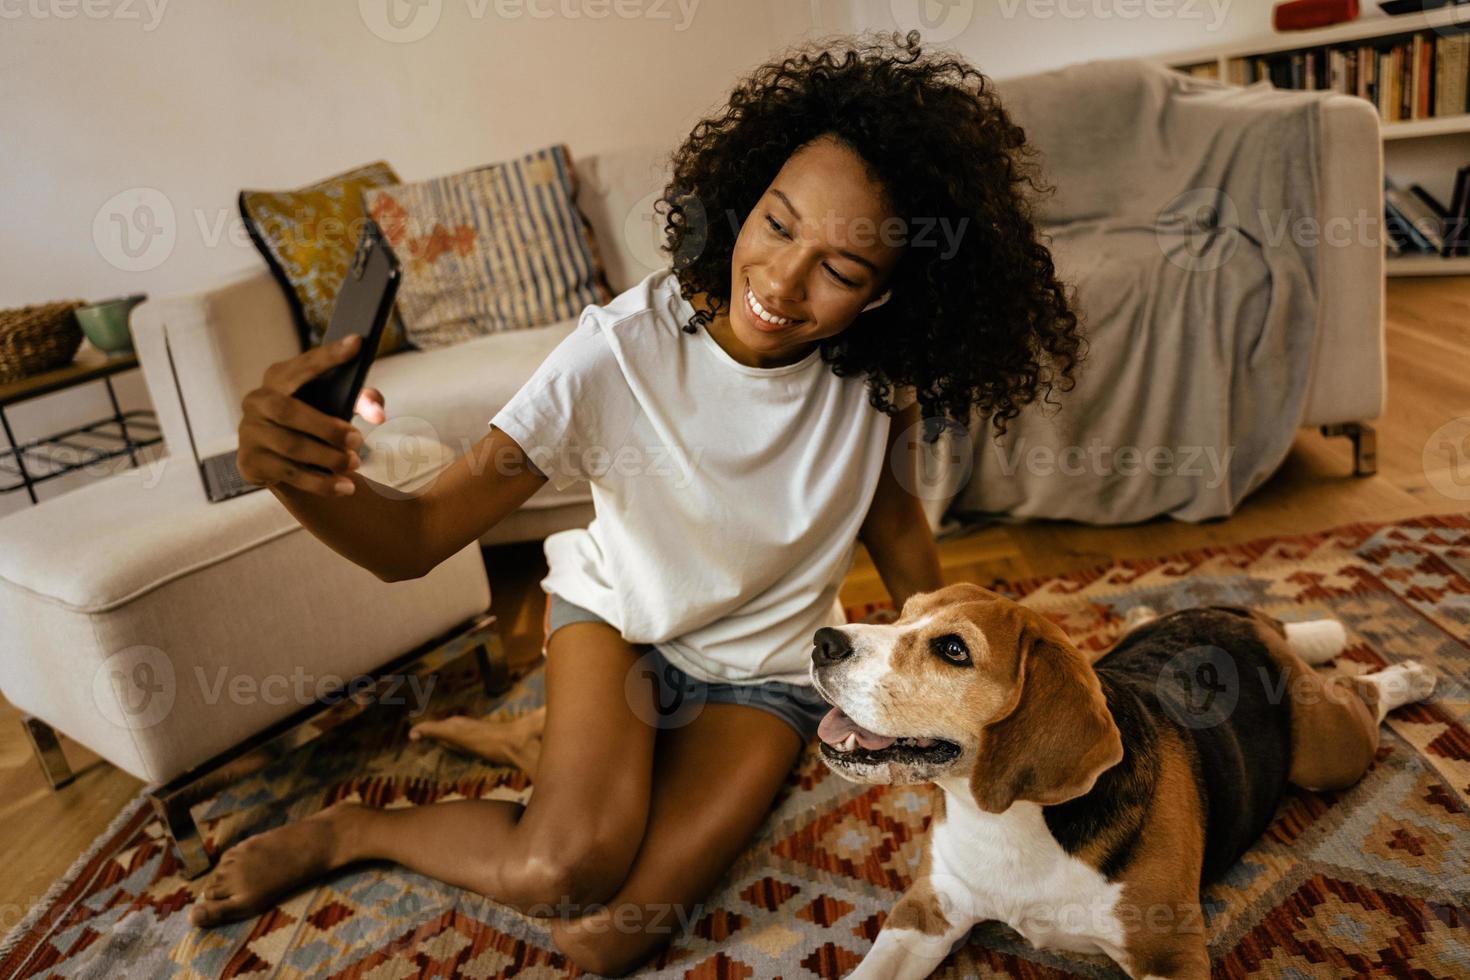 zwarte vrouw neemt selfie met haar hond terwijl ze op de vloer zit foto